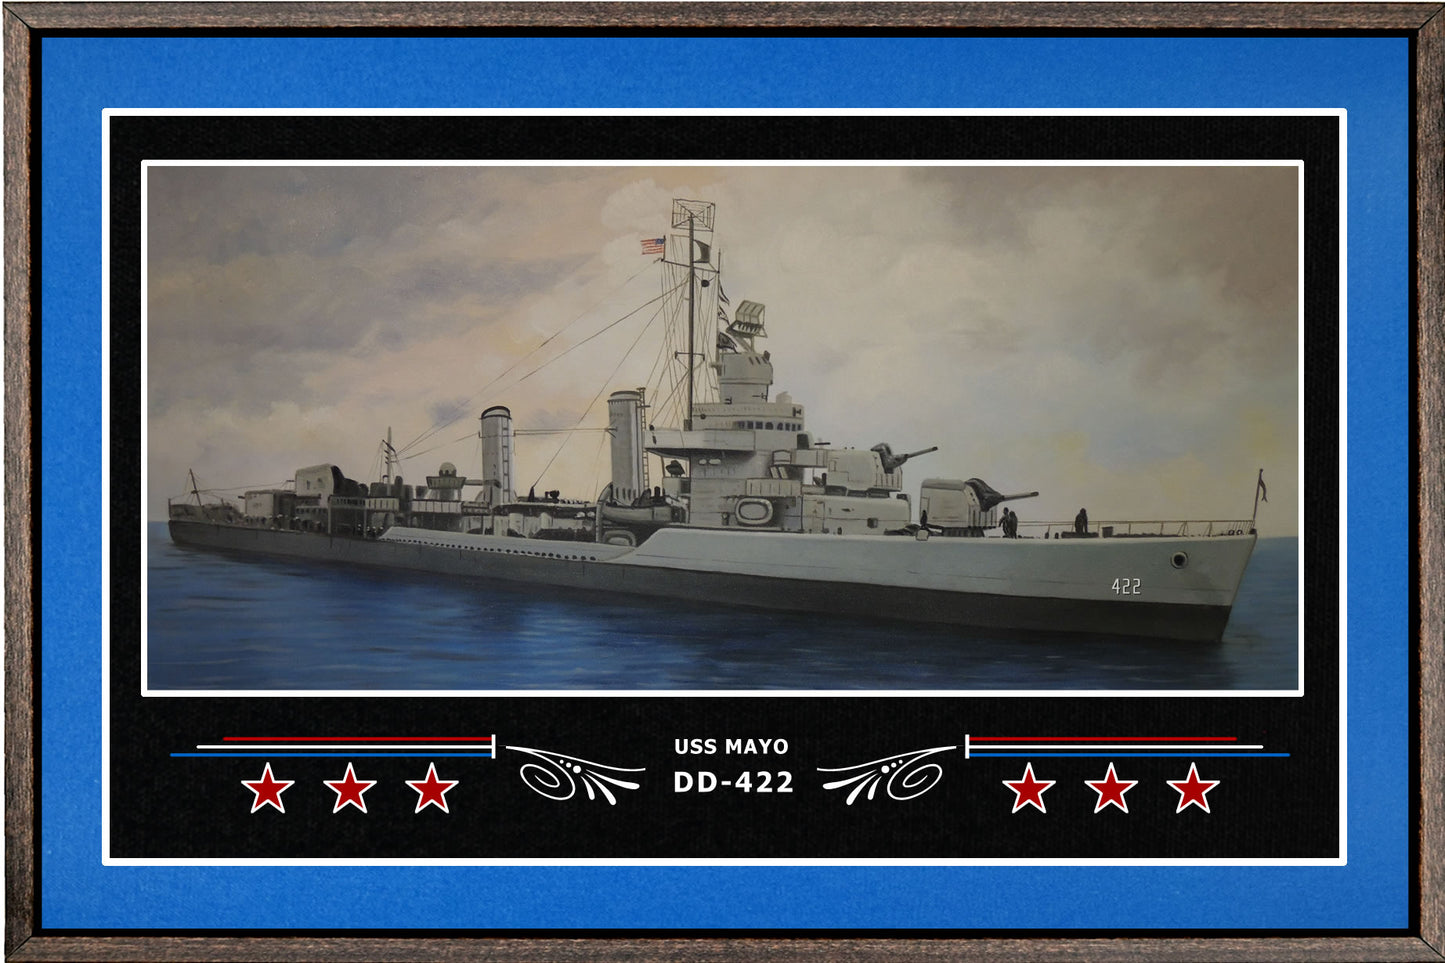 USS MAYO DD 422 BOX FRAMED CANVAS ART BLUE